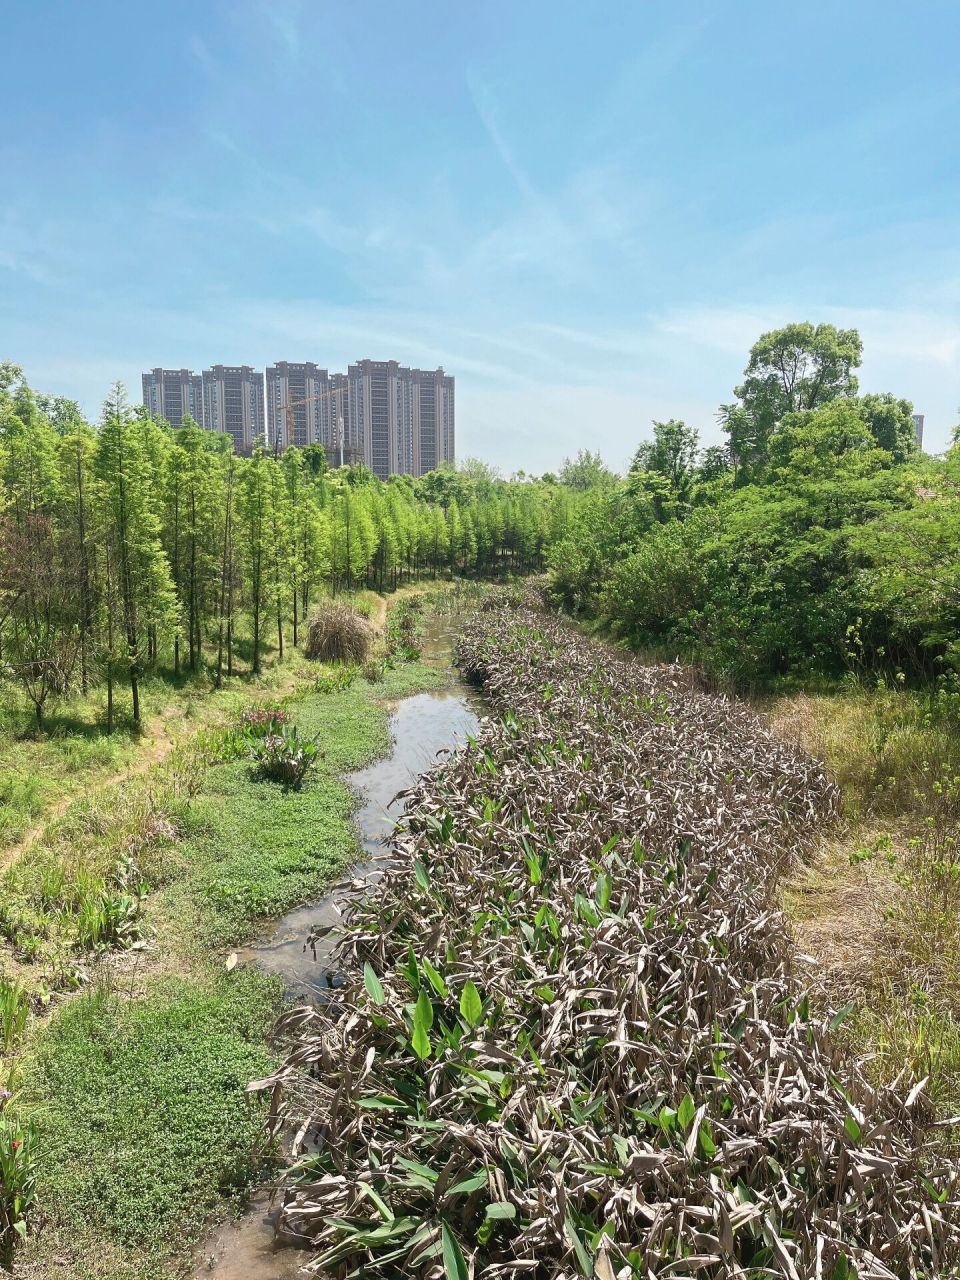 萍乡萍水湖湿地公园图片